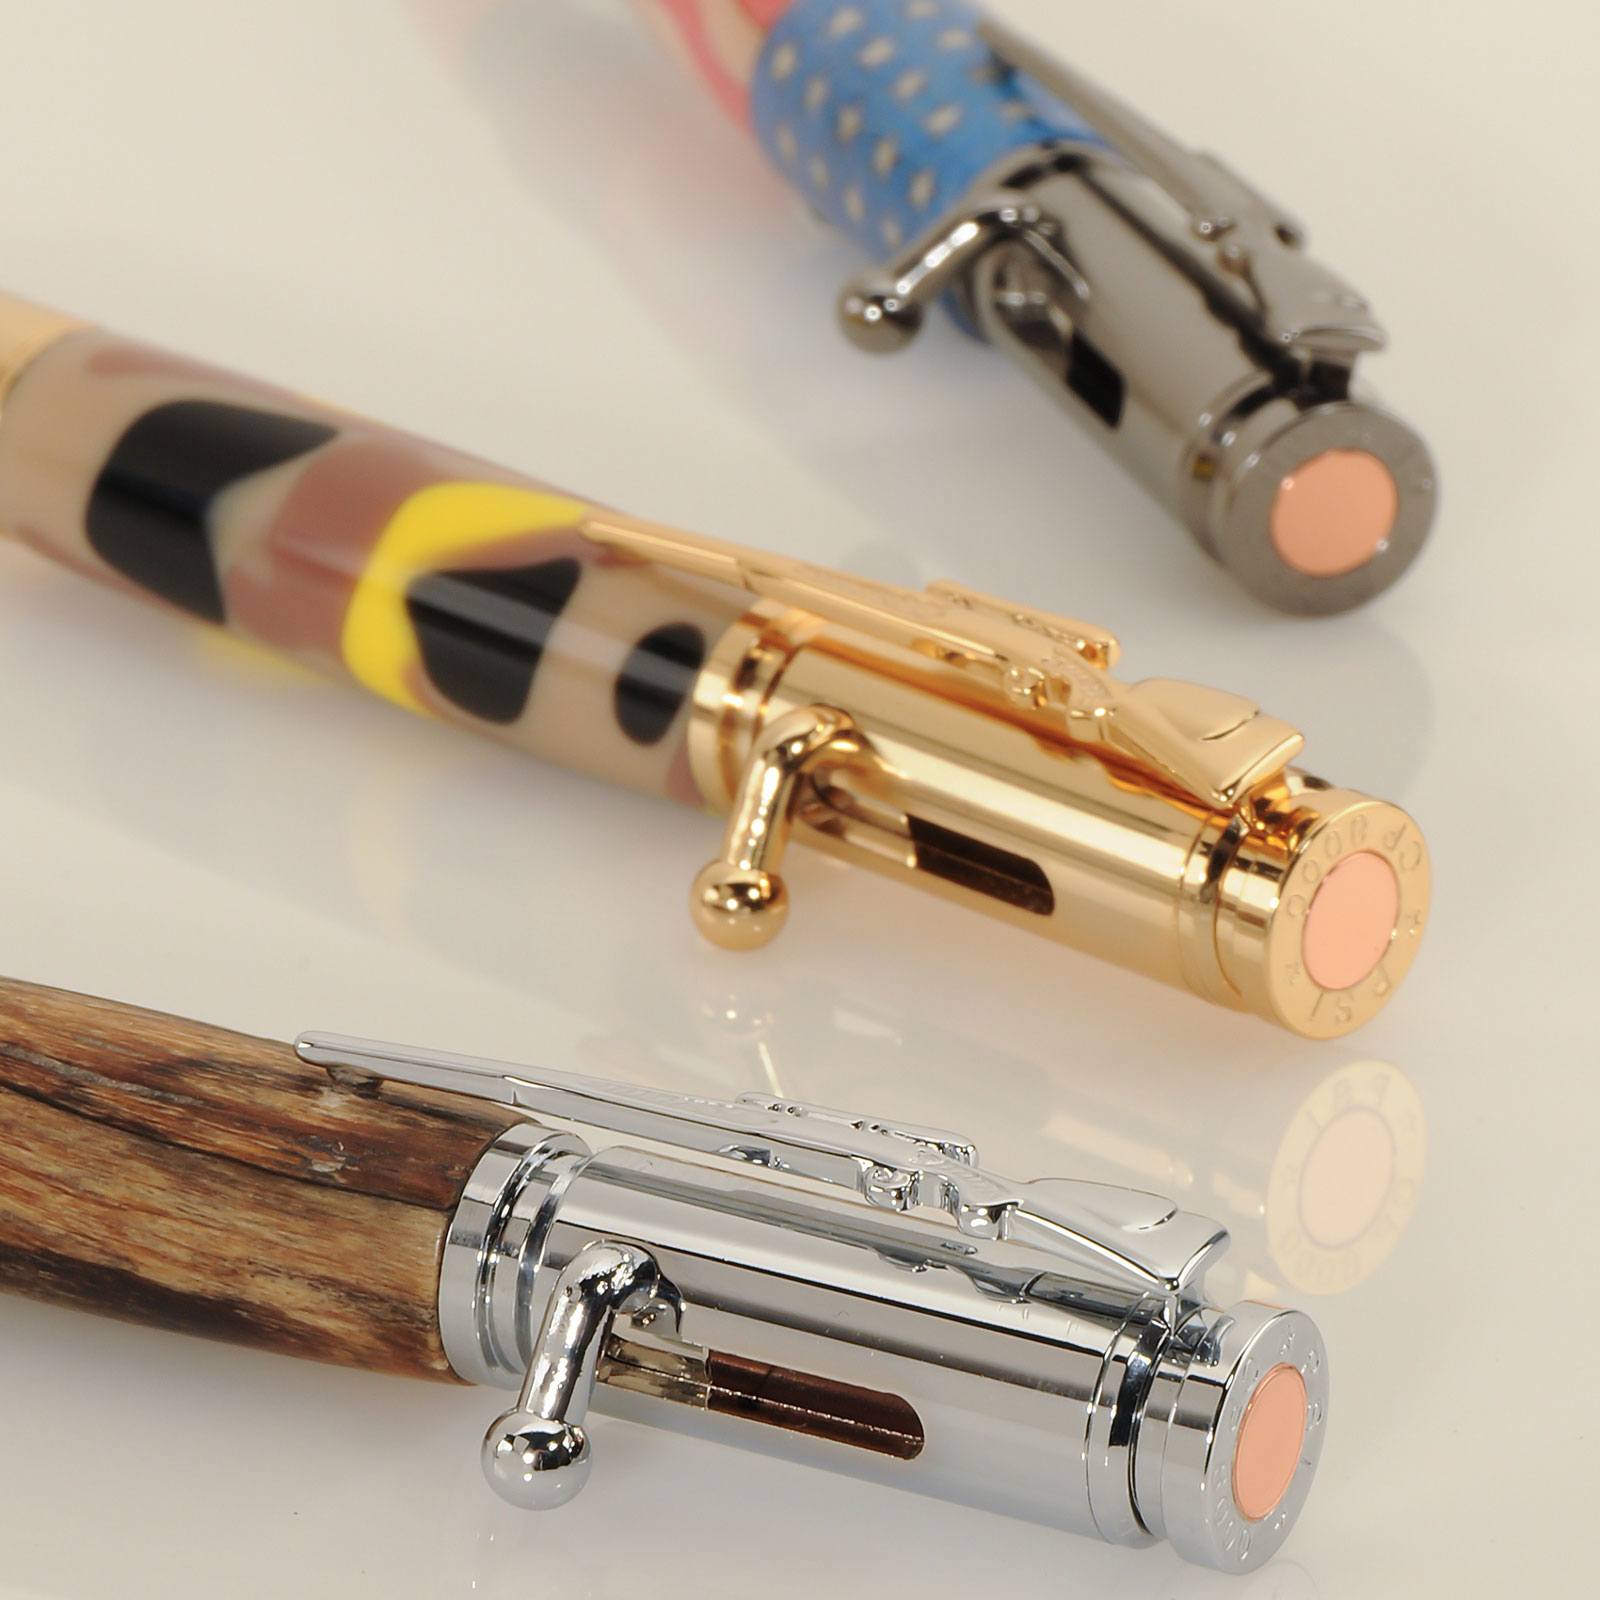 3 Bolt Action Pen Kit Starter Set at Penn State Industries